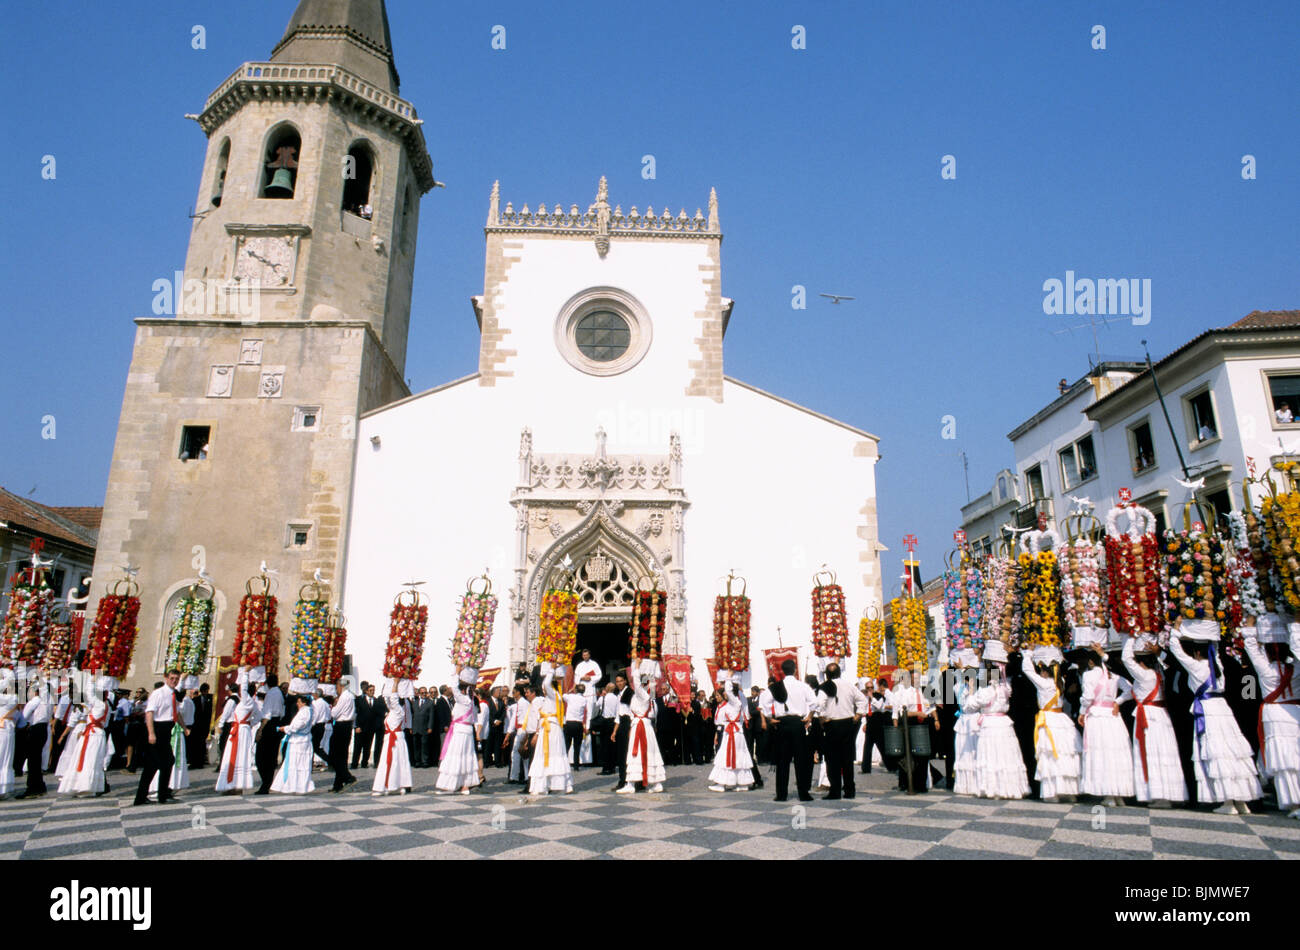 L'elaborato e coloratissima festa dos Tabuleiros che avviene in Tomar, Portogallo centrale, ogni quattro anni. Foto Stock